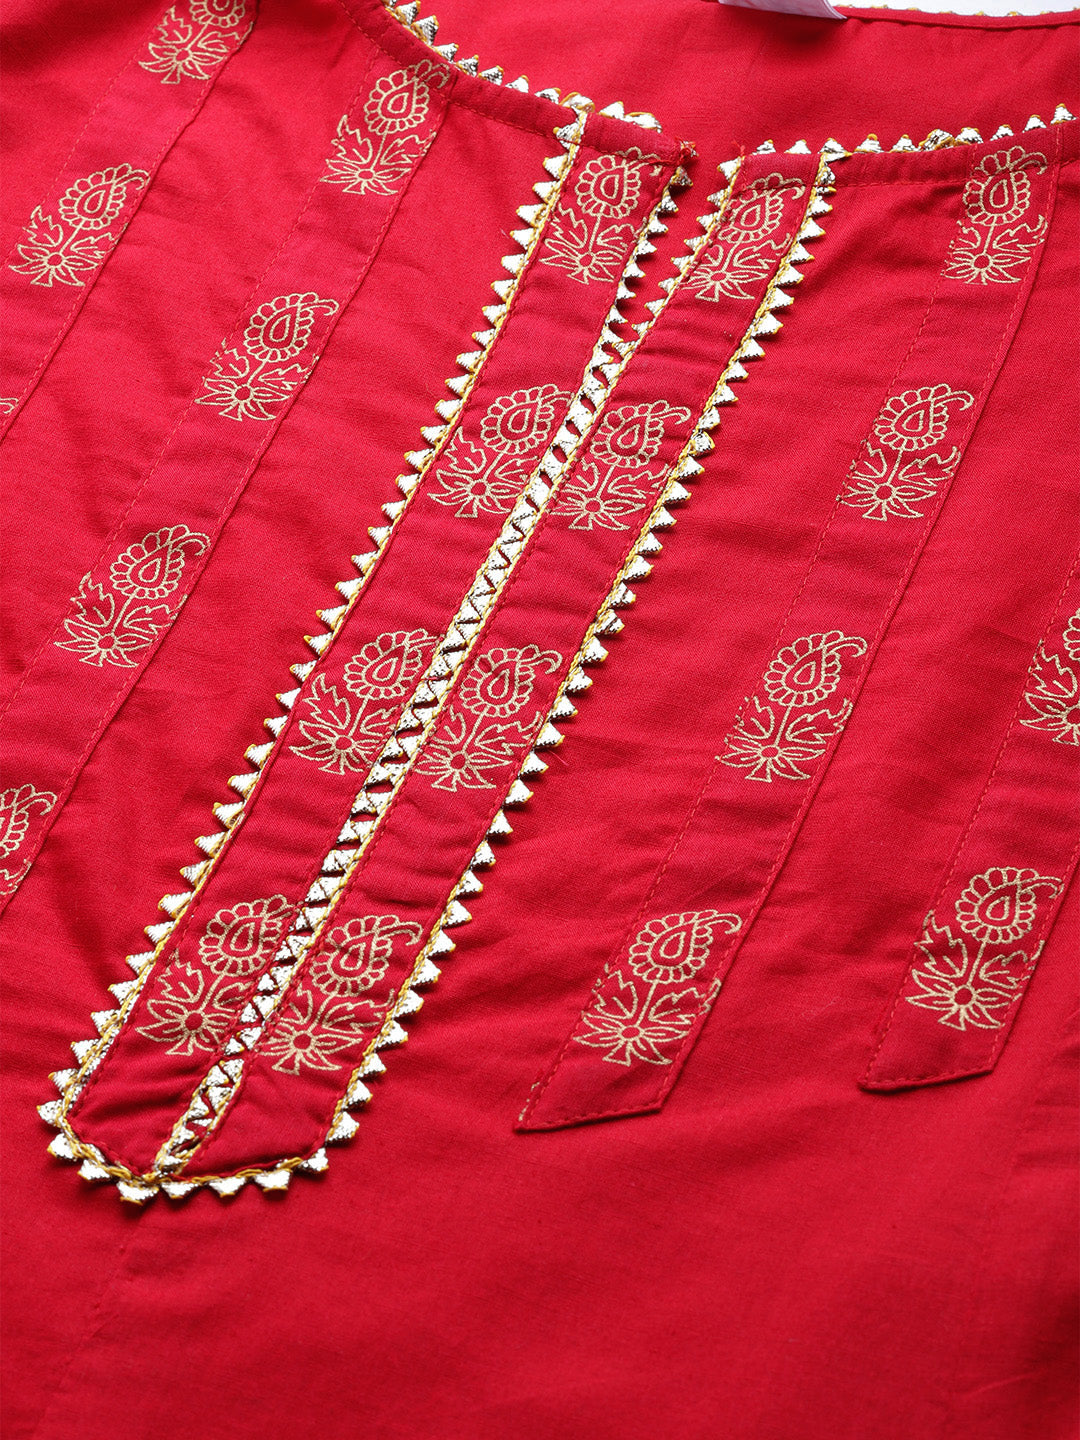  Cotton Floral Printed Anarkali Kurta (red)